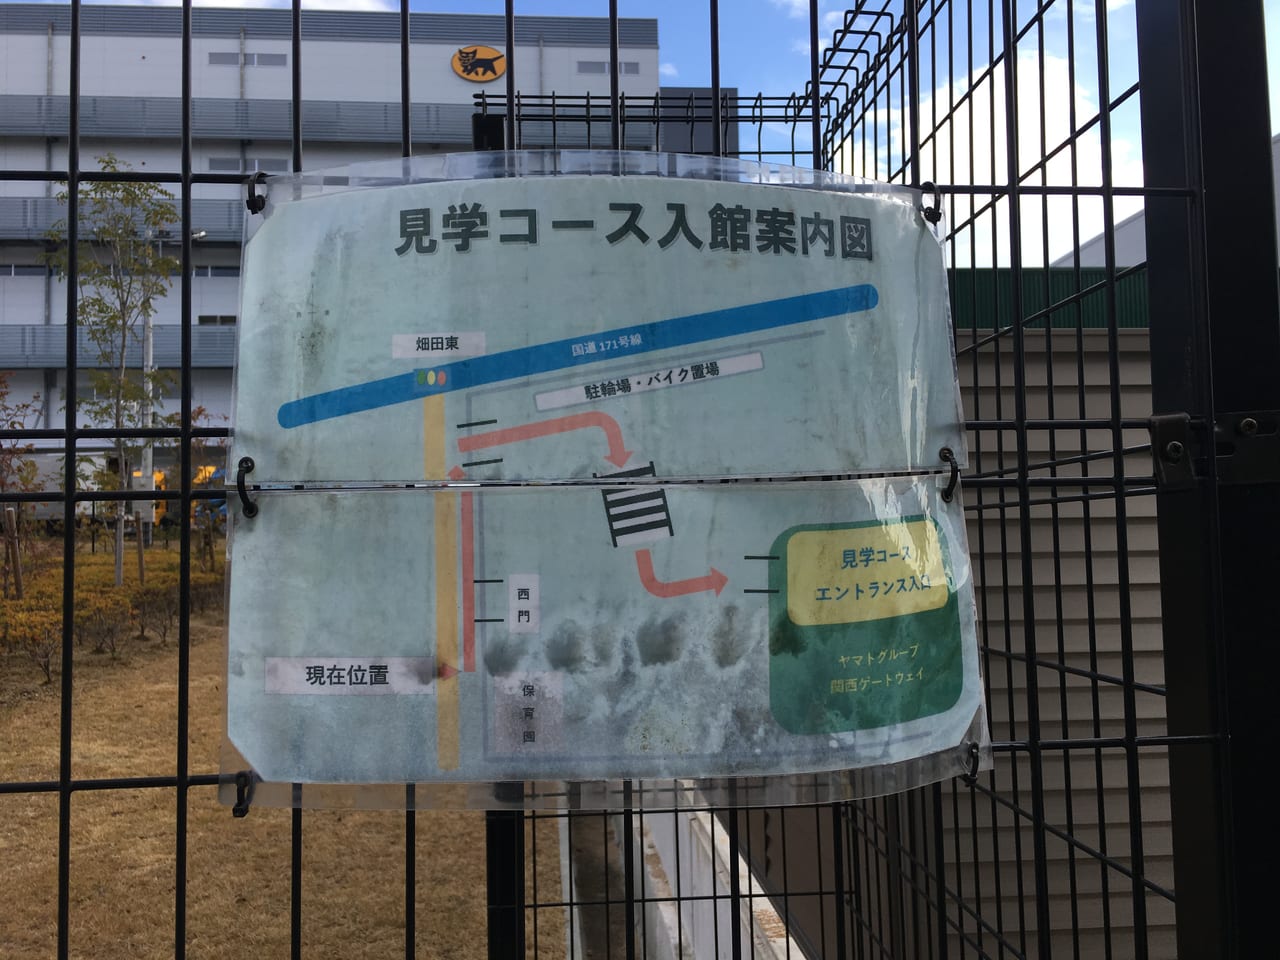 茨木市 宅配便の仕組みをのぞき見 ヤマト運輸の巨大工場 が見学できるって知ってた 号外net 茨木